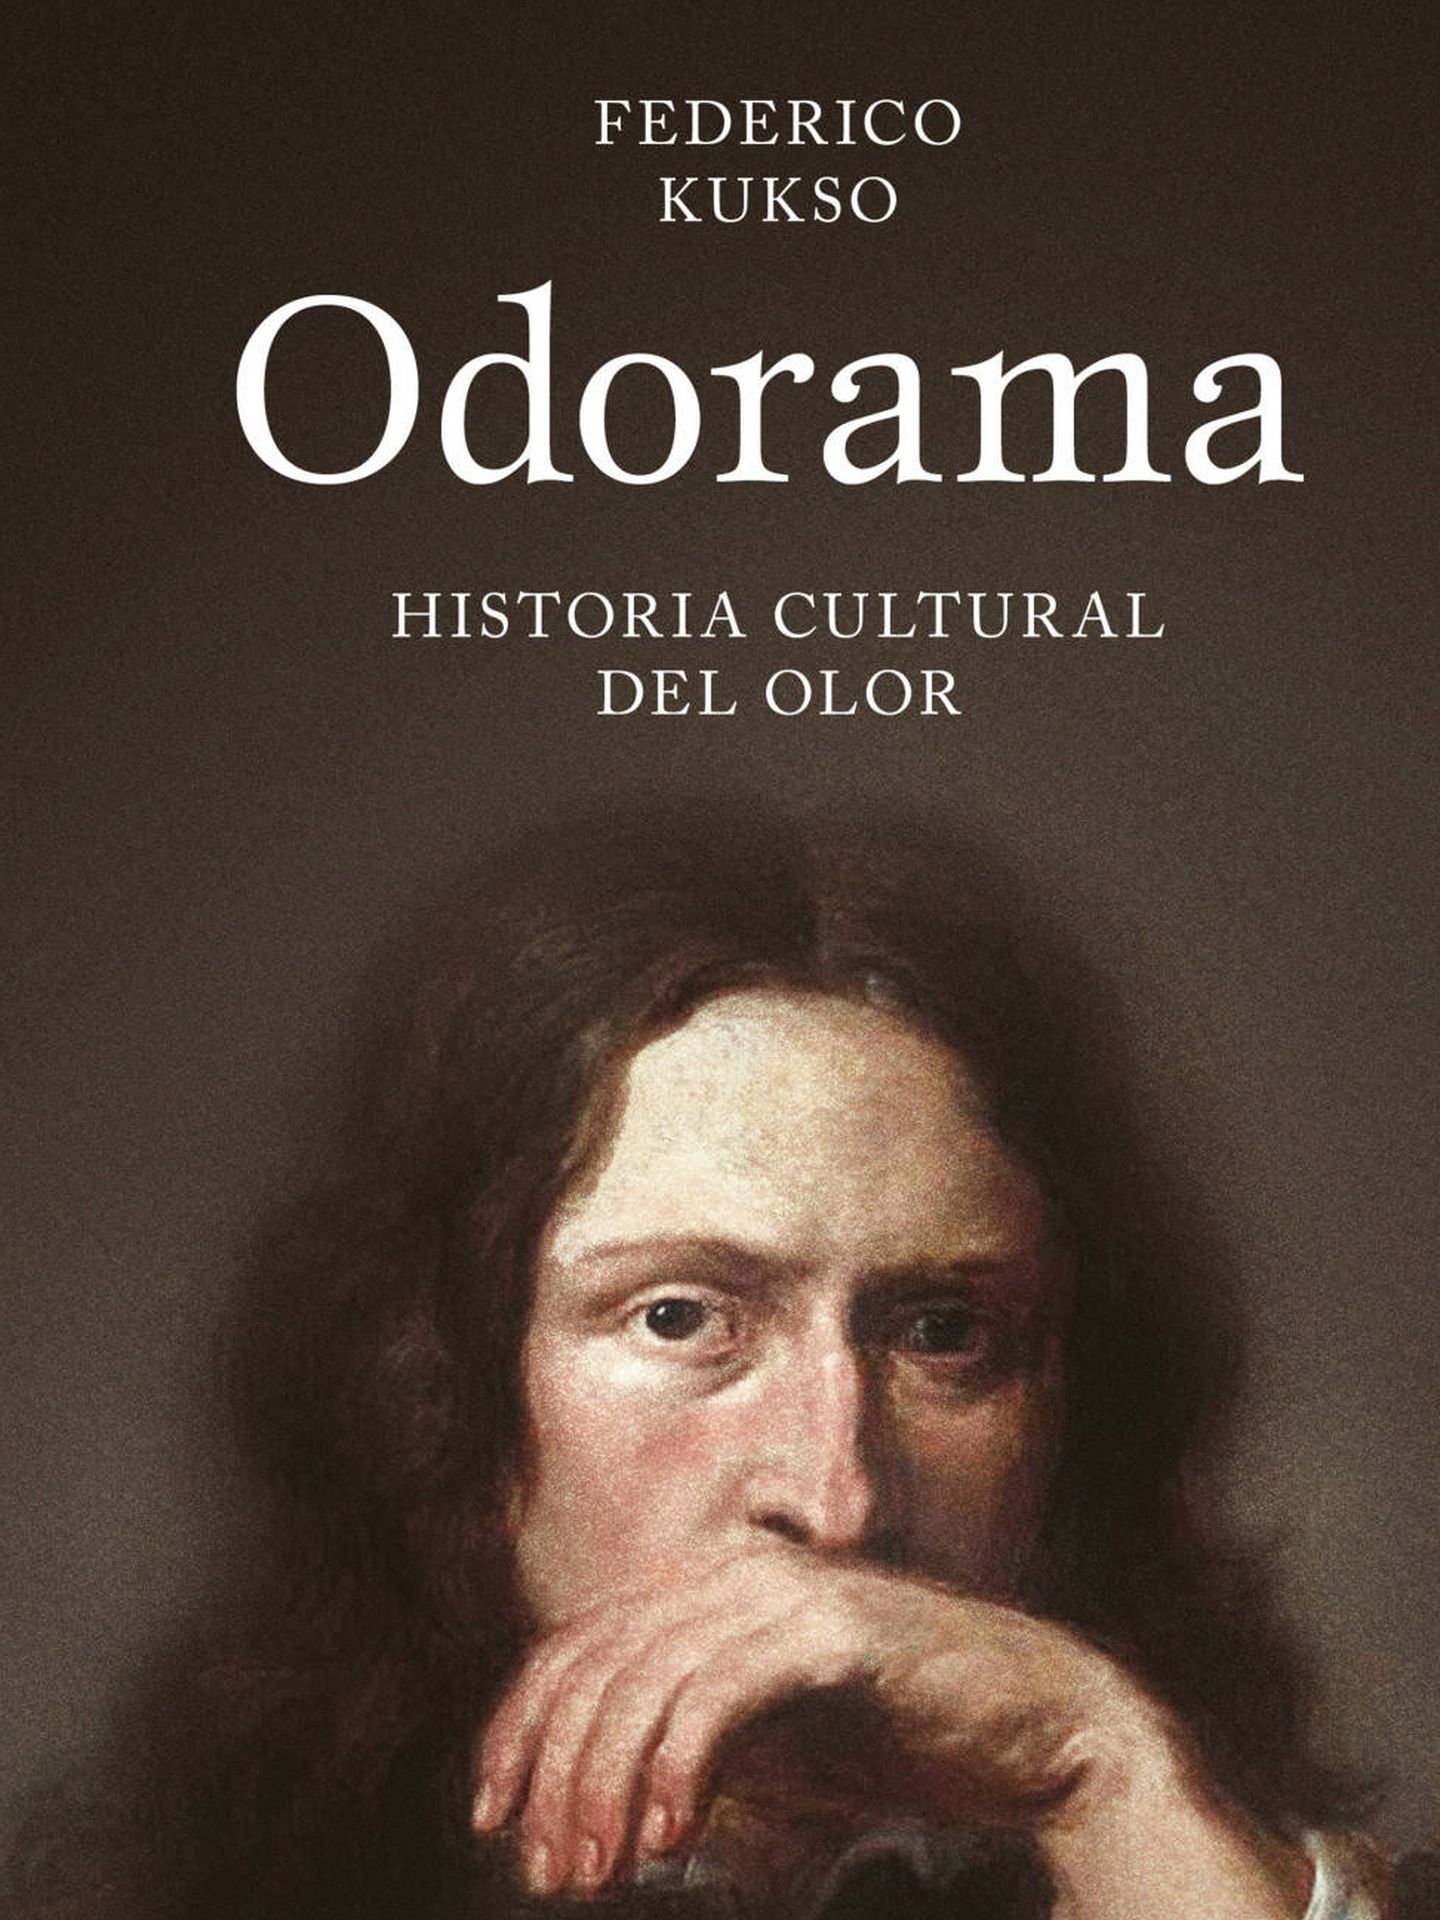 Entrevista a Federico Kukso, autor de ‘Odorama: Historia cultural
del olor’